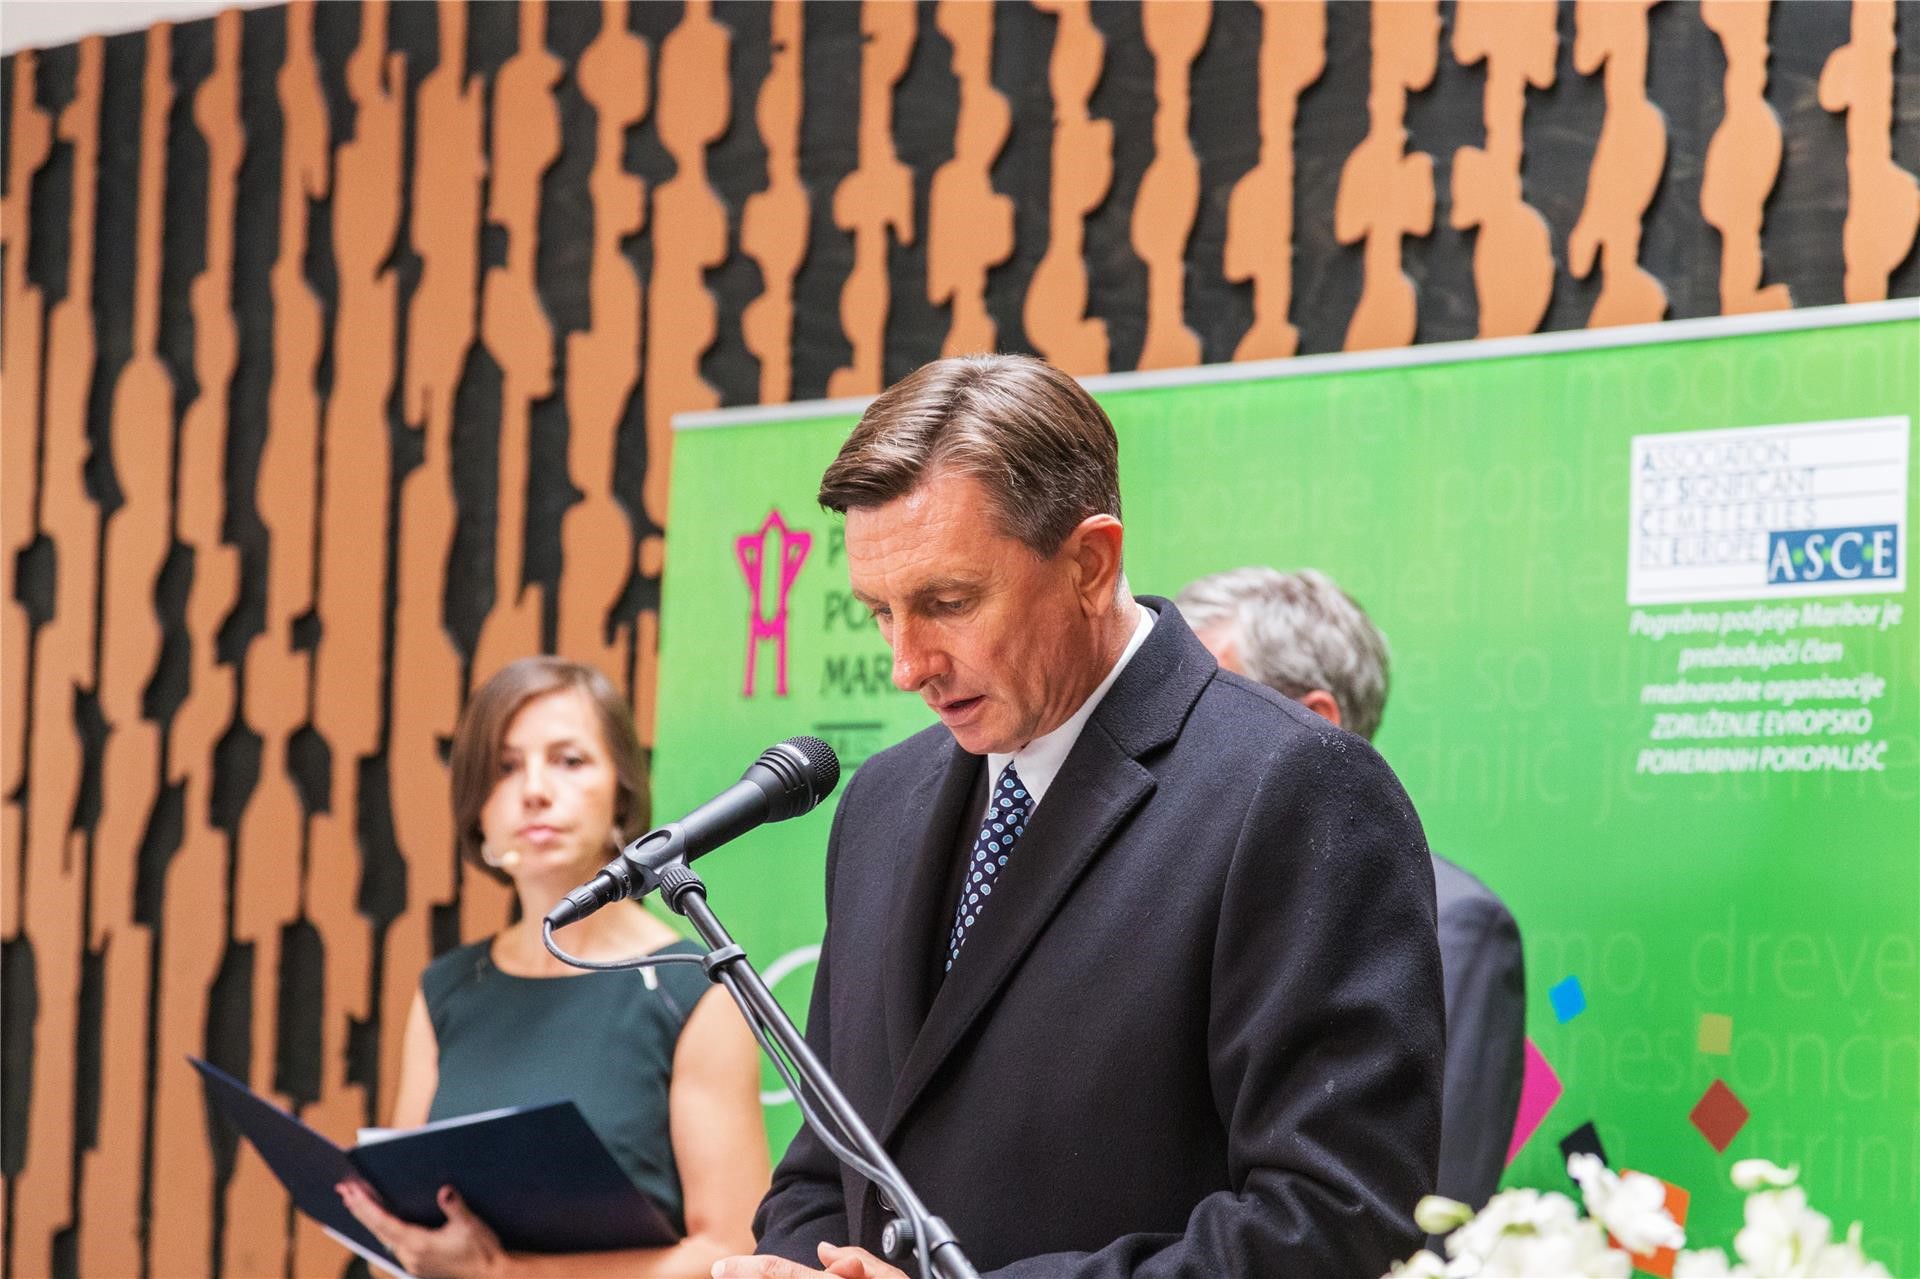 Govor Boruta Pahorja, predsednika Slovenije